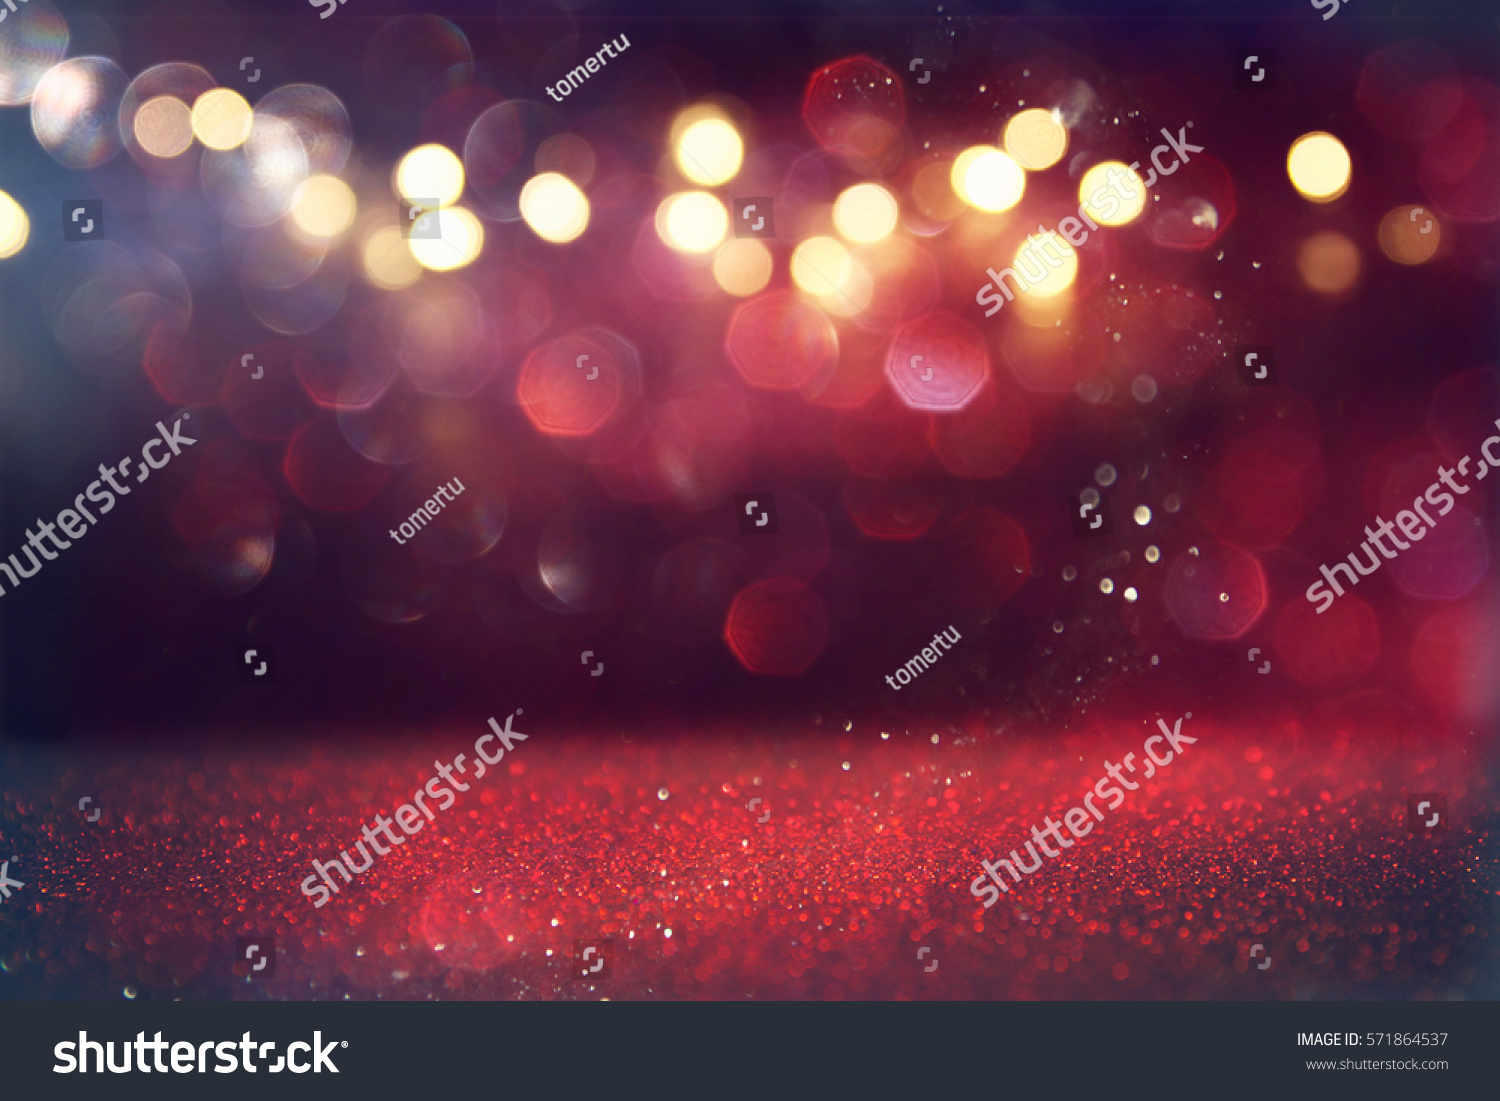 Red glitter vintage lights background. defocused #571864537